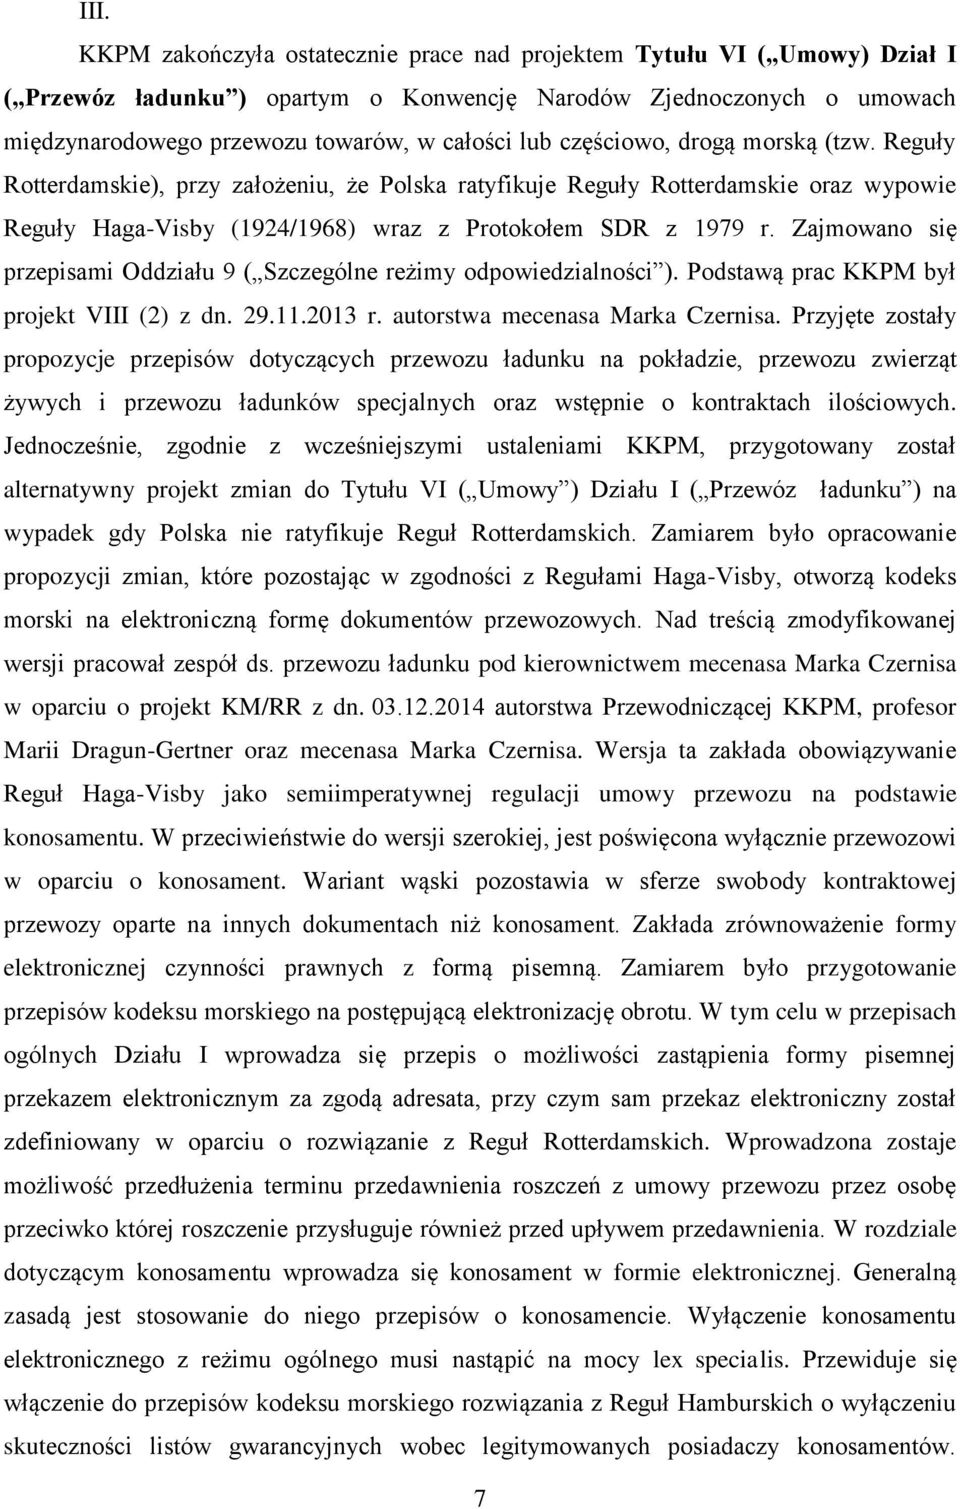 Zajmowano się przepisami Oddziału 9 ( Szczególne reżimy odpowiedzialności ). Podstawą prac KKPM był projekt VIII (2) z dn. 29.11.2013 r. autorstwa mecenasa Marka Czernisa.